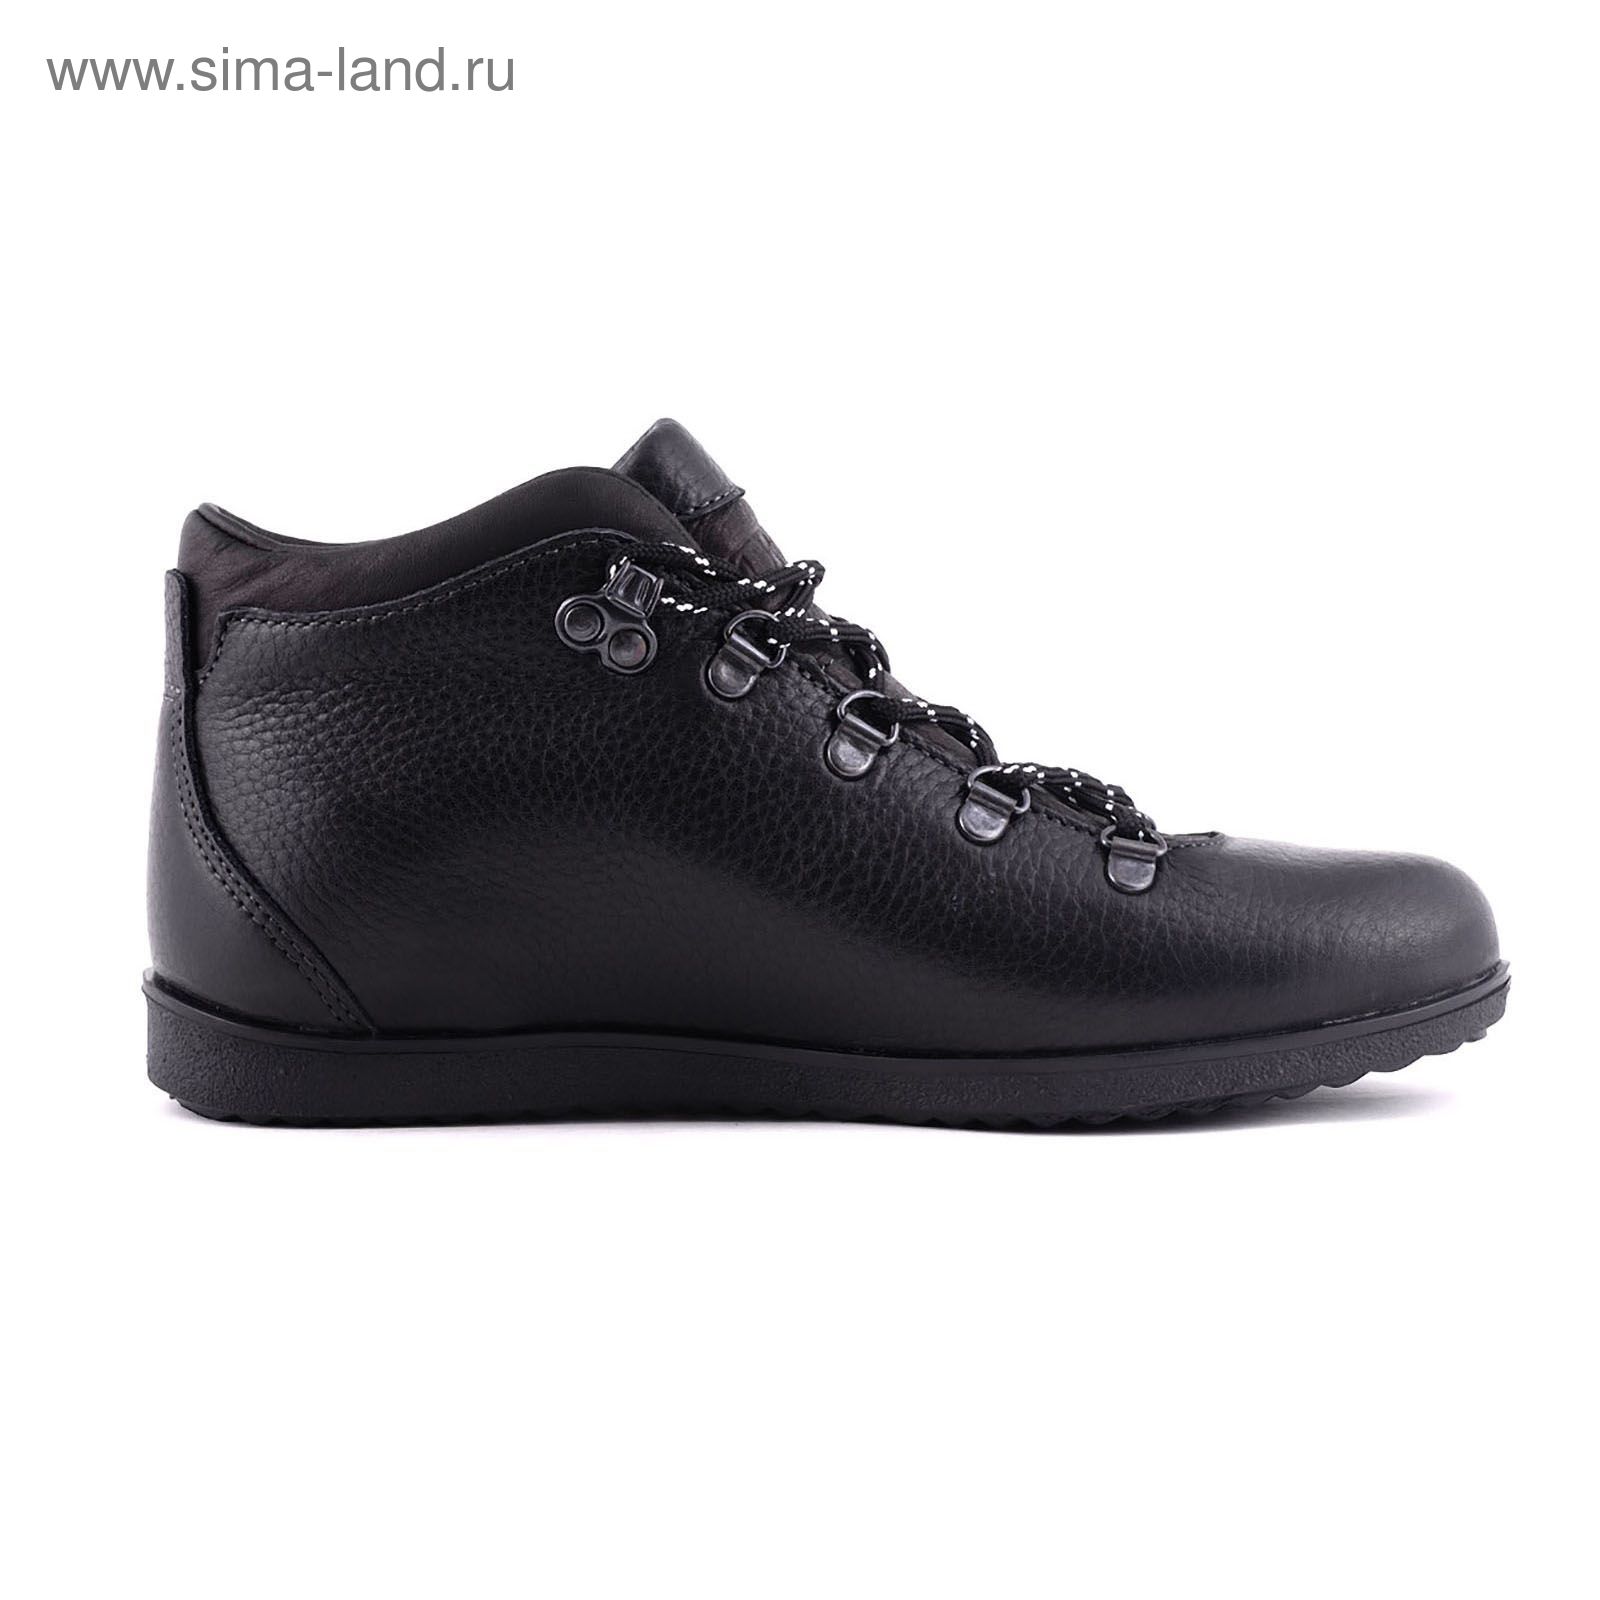 Ботинки TREK Спорт 77-56 мех (черный) (р. 36)